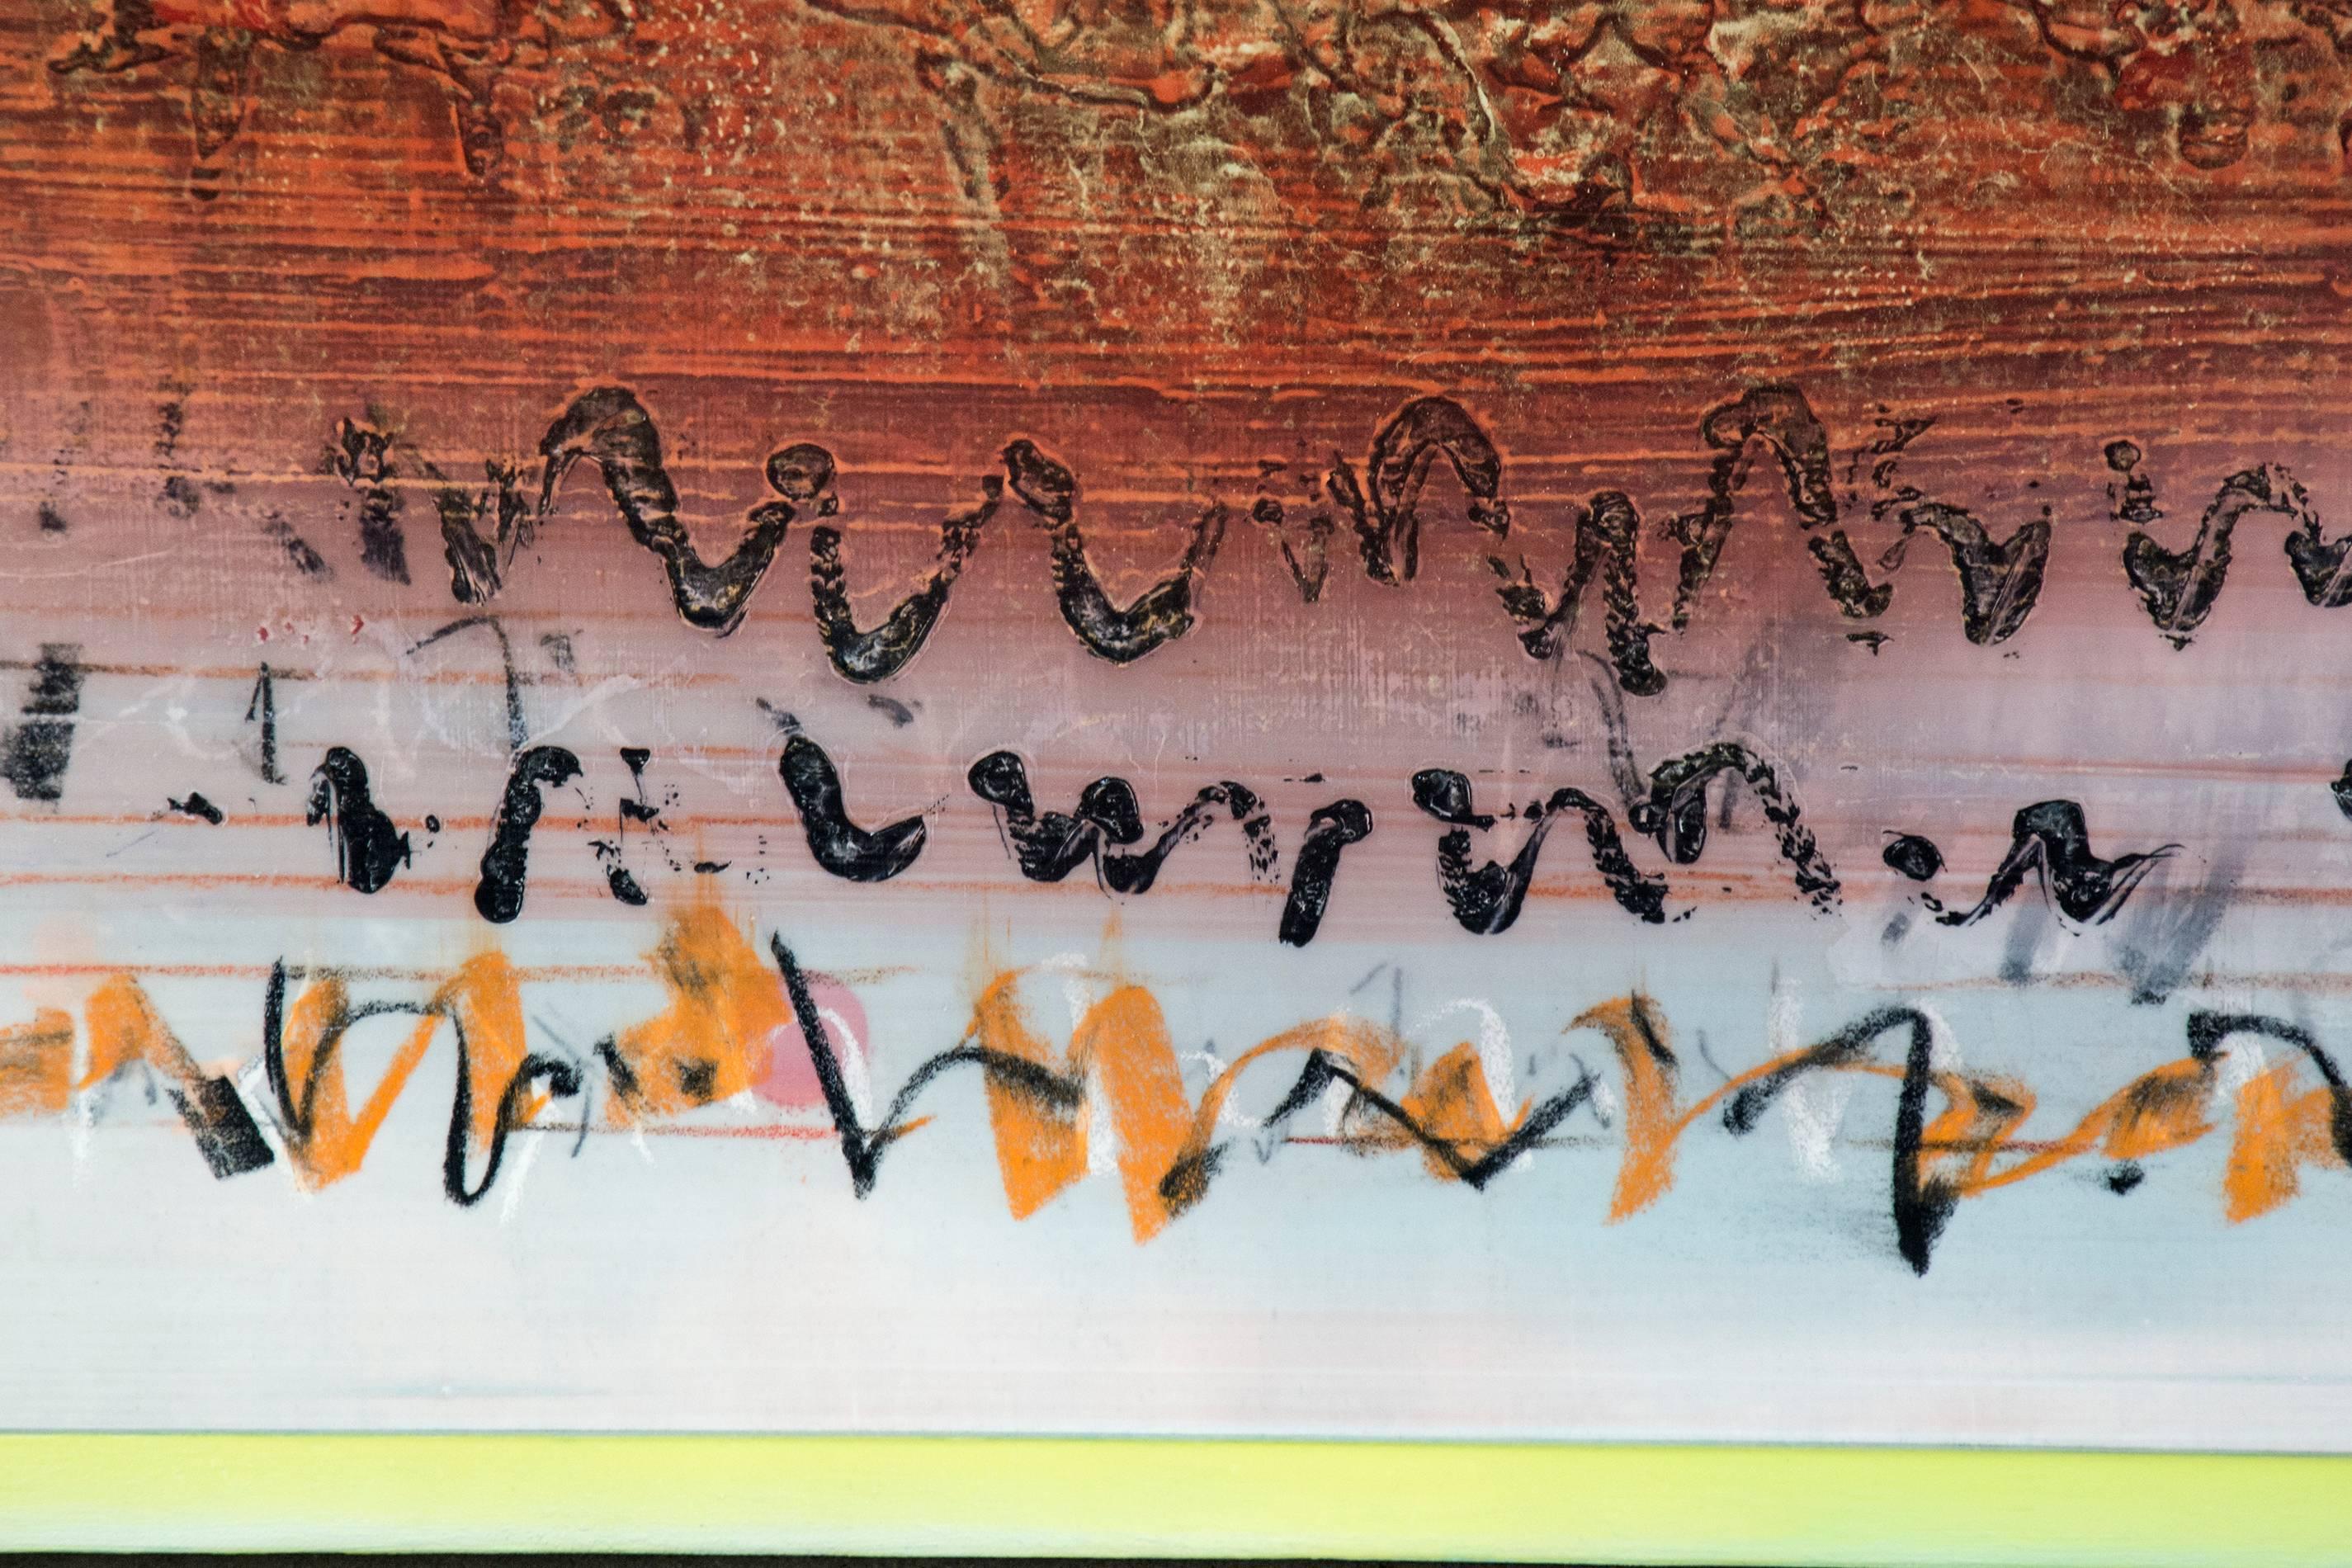 Des lignes calligraphiques visibles, presque médicalement, à travers une flaque brunie d'acrylique bronze-orange en couches, se poursuivent dans une glyphique secrète au pied de la toile carrée. Le tout flotte sur un fond de lilas pâle et est